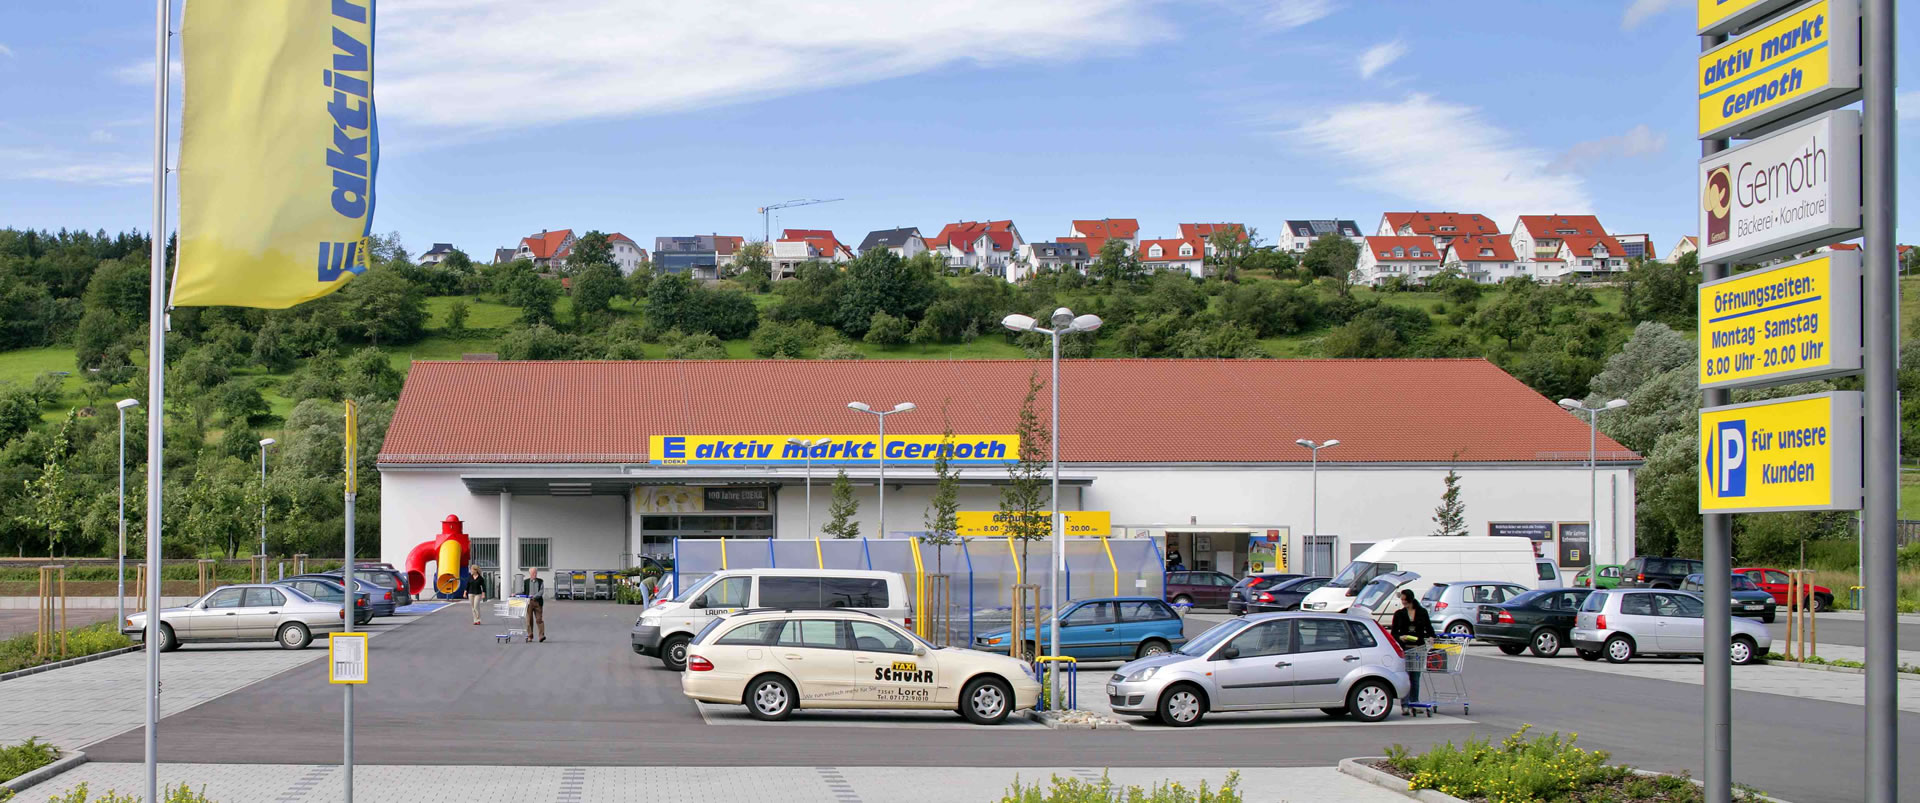 Makler für Kapitalanlage und Investment Immobilien bei Karlsruhe Heidelberg Mannheim in Baden Württemberg